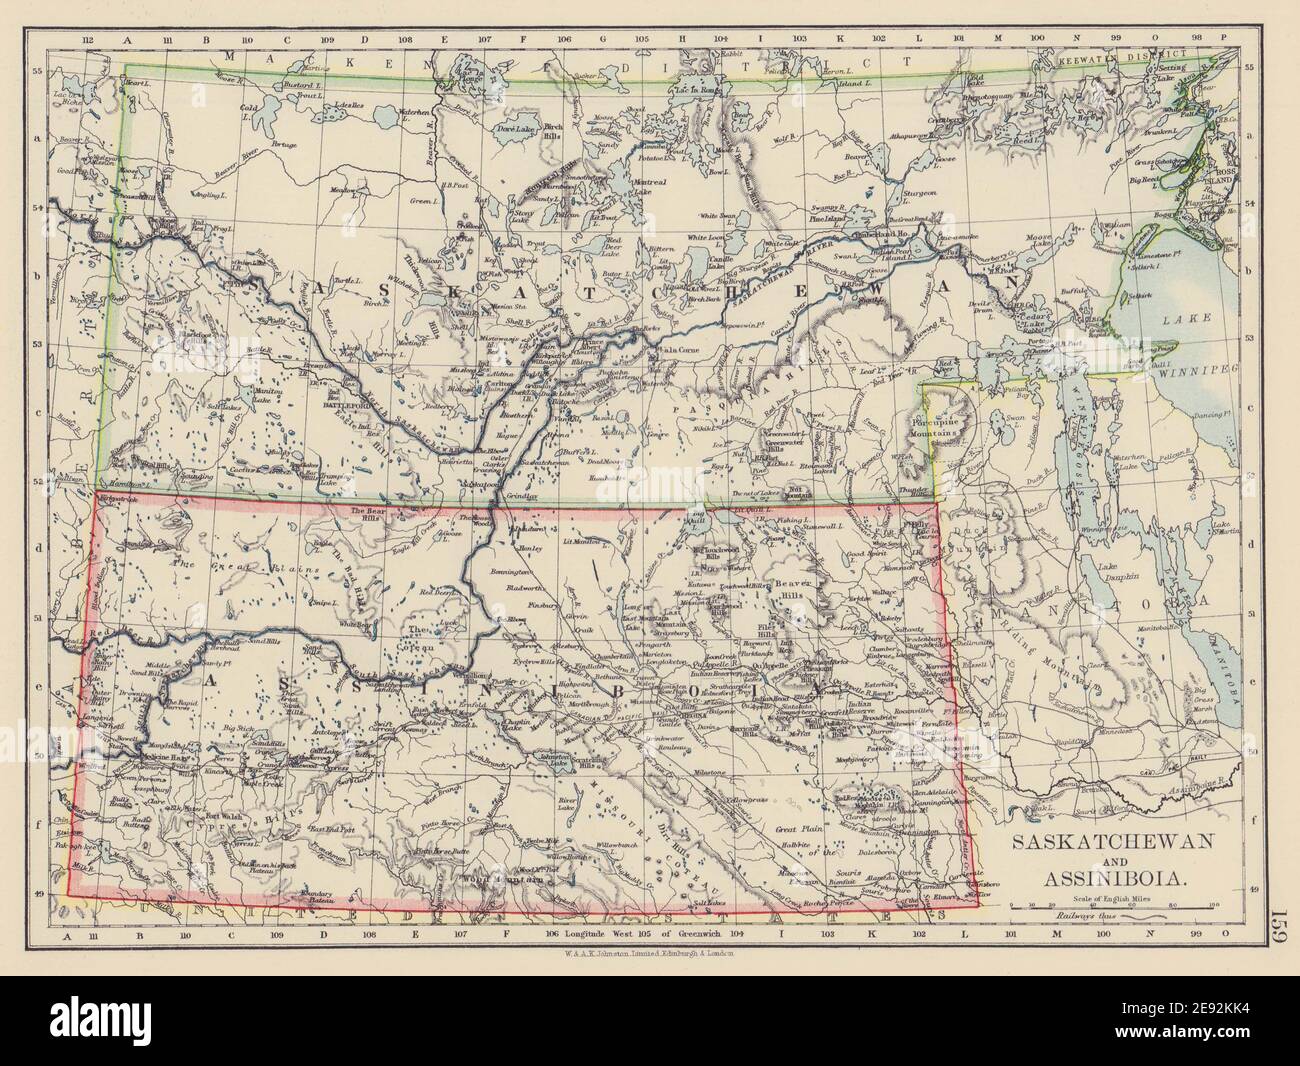 MAPPA della provincia DI ASSINIBOIA e SASKATCHEWAN. Ferrovia canadese del Pacifico. JOHNSTON 1901 Foto Stock